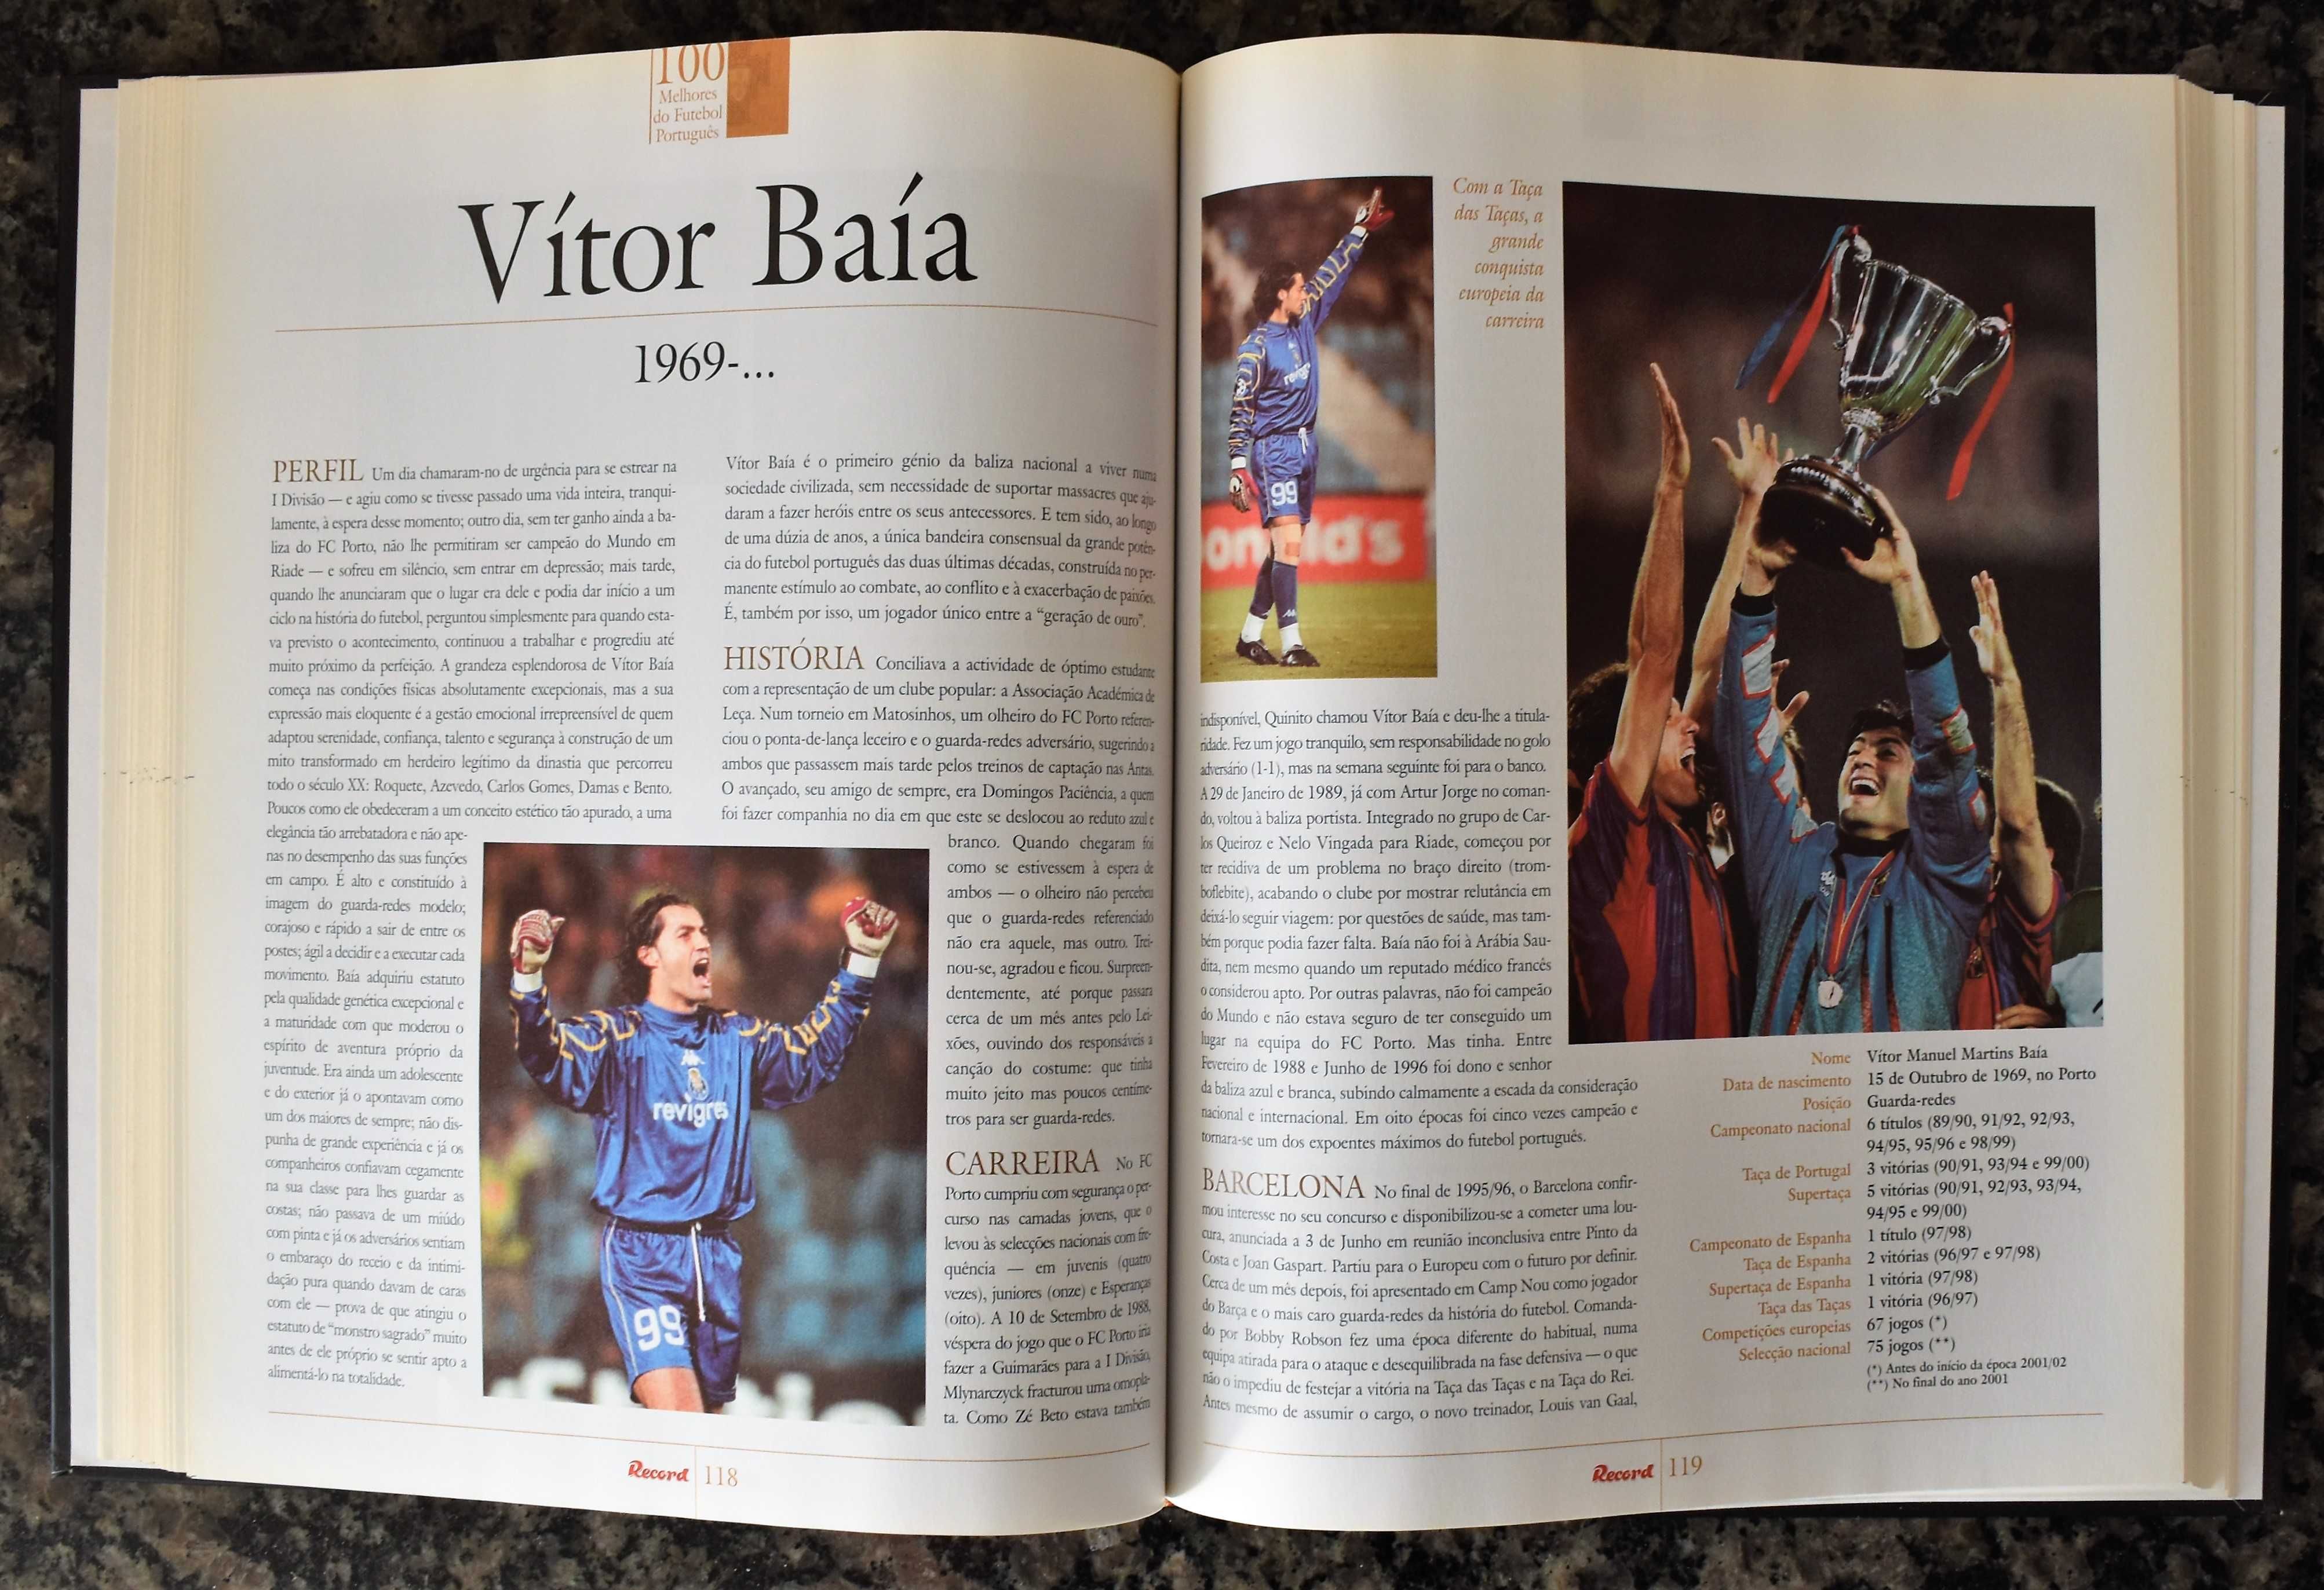 100 Melhores do Futebol Português (Volumes 1 e 2)